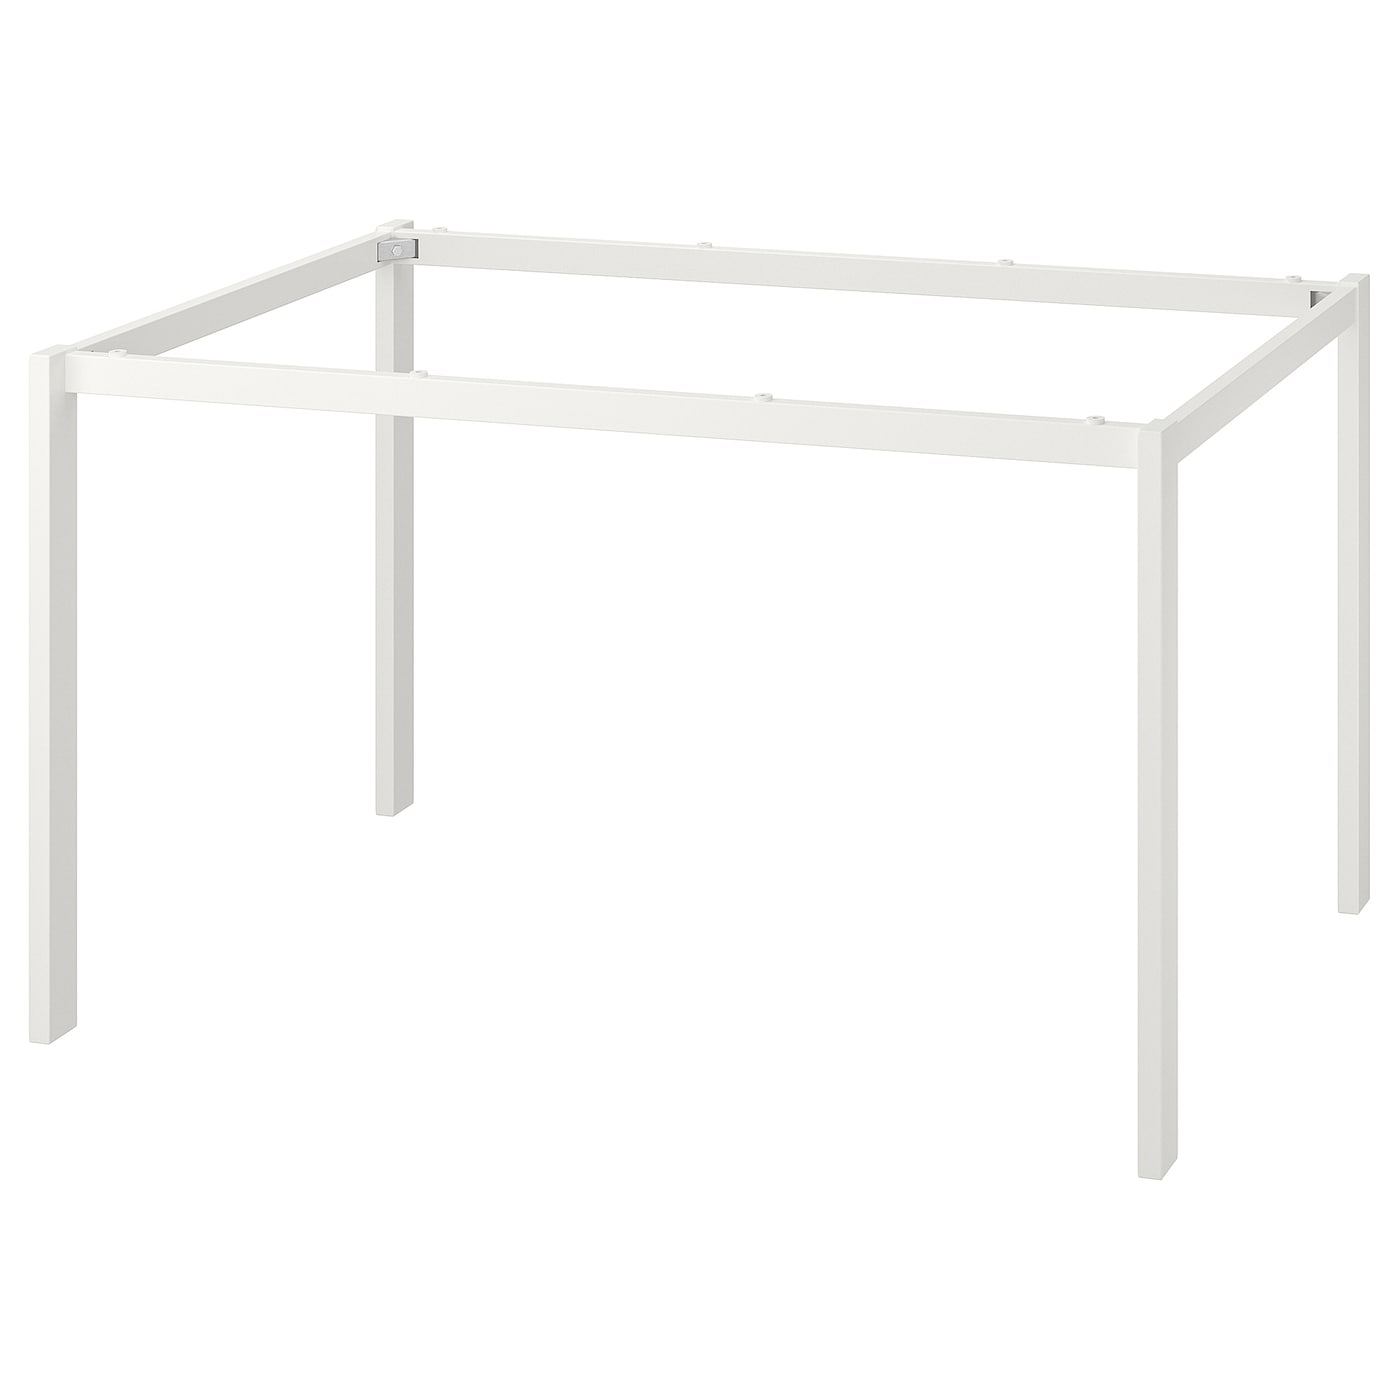 Основание обеденного стола - IKEA MELLTORP, 72x125x75см, белый, МЕЛЬТОРП ИКЕА